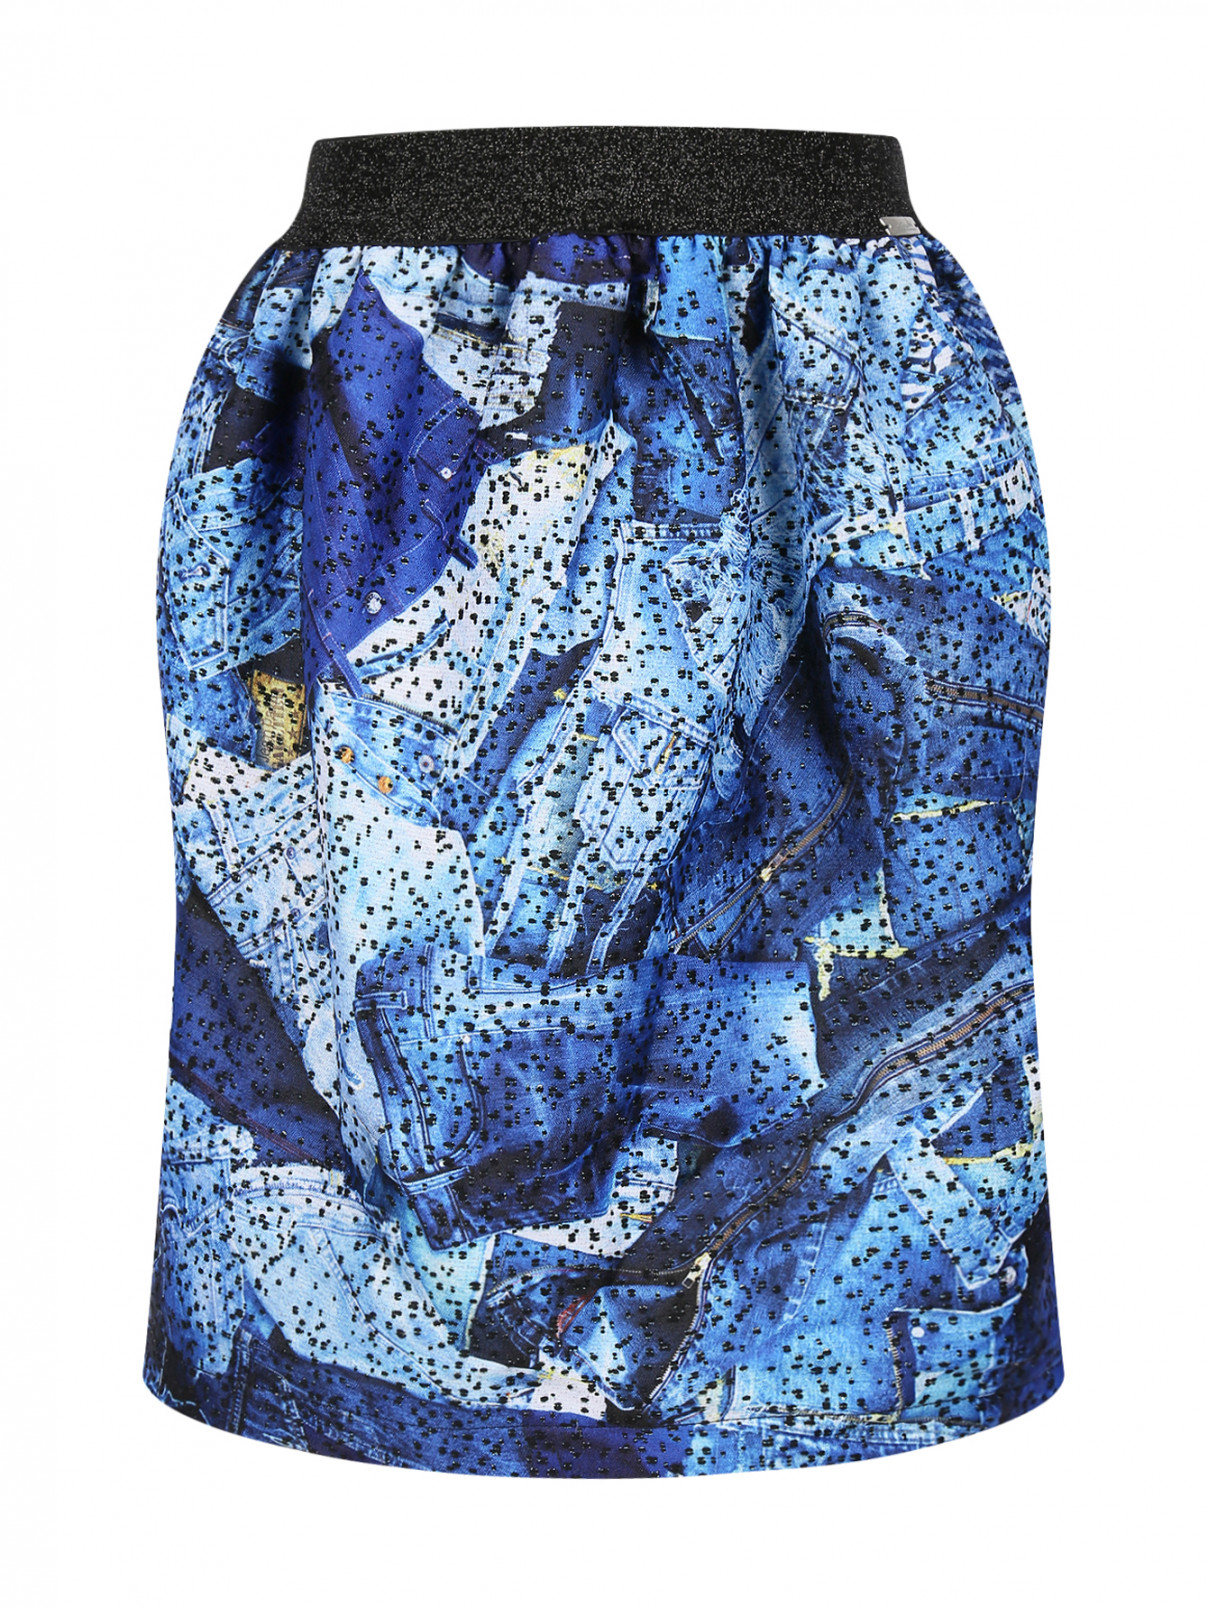 Пышная юбка с узором Junior Gaultier  –  Общий вид  – Цвет:  Синий